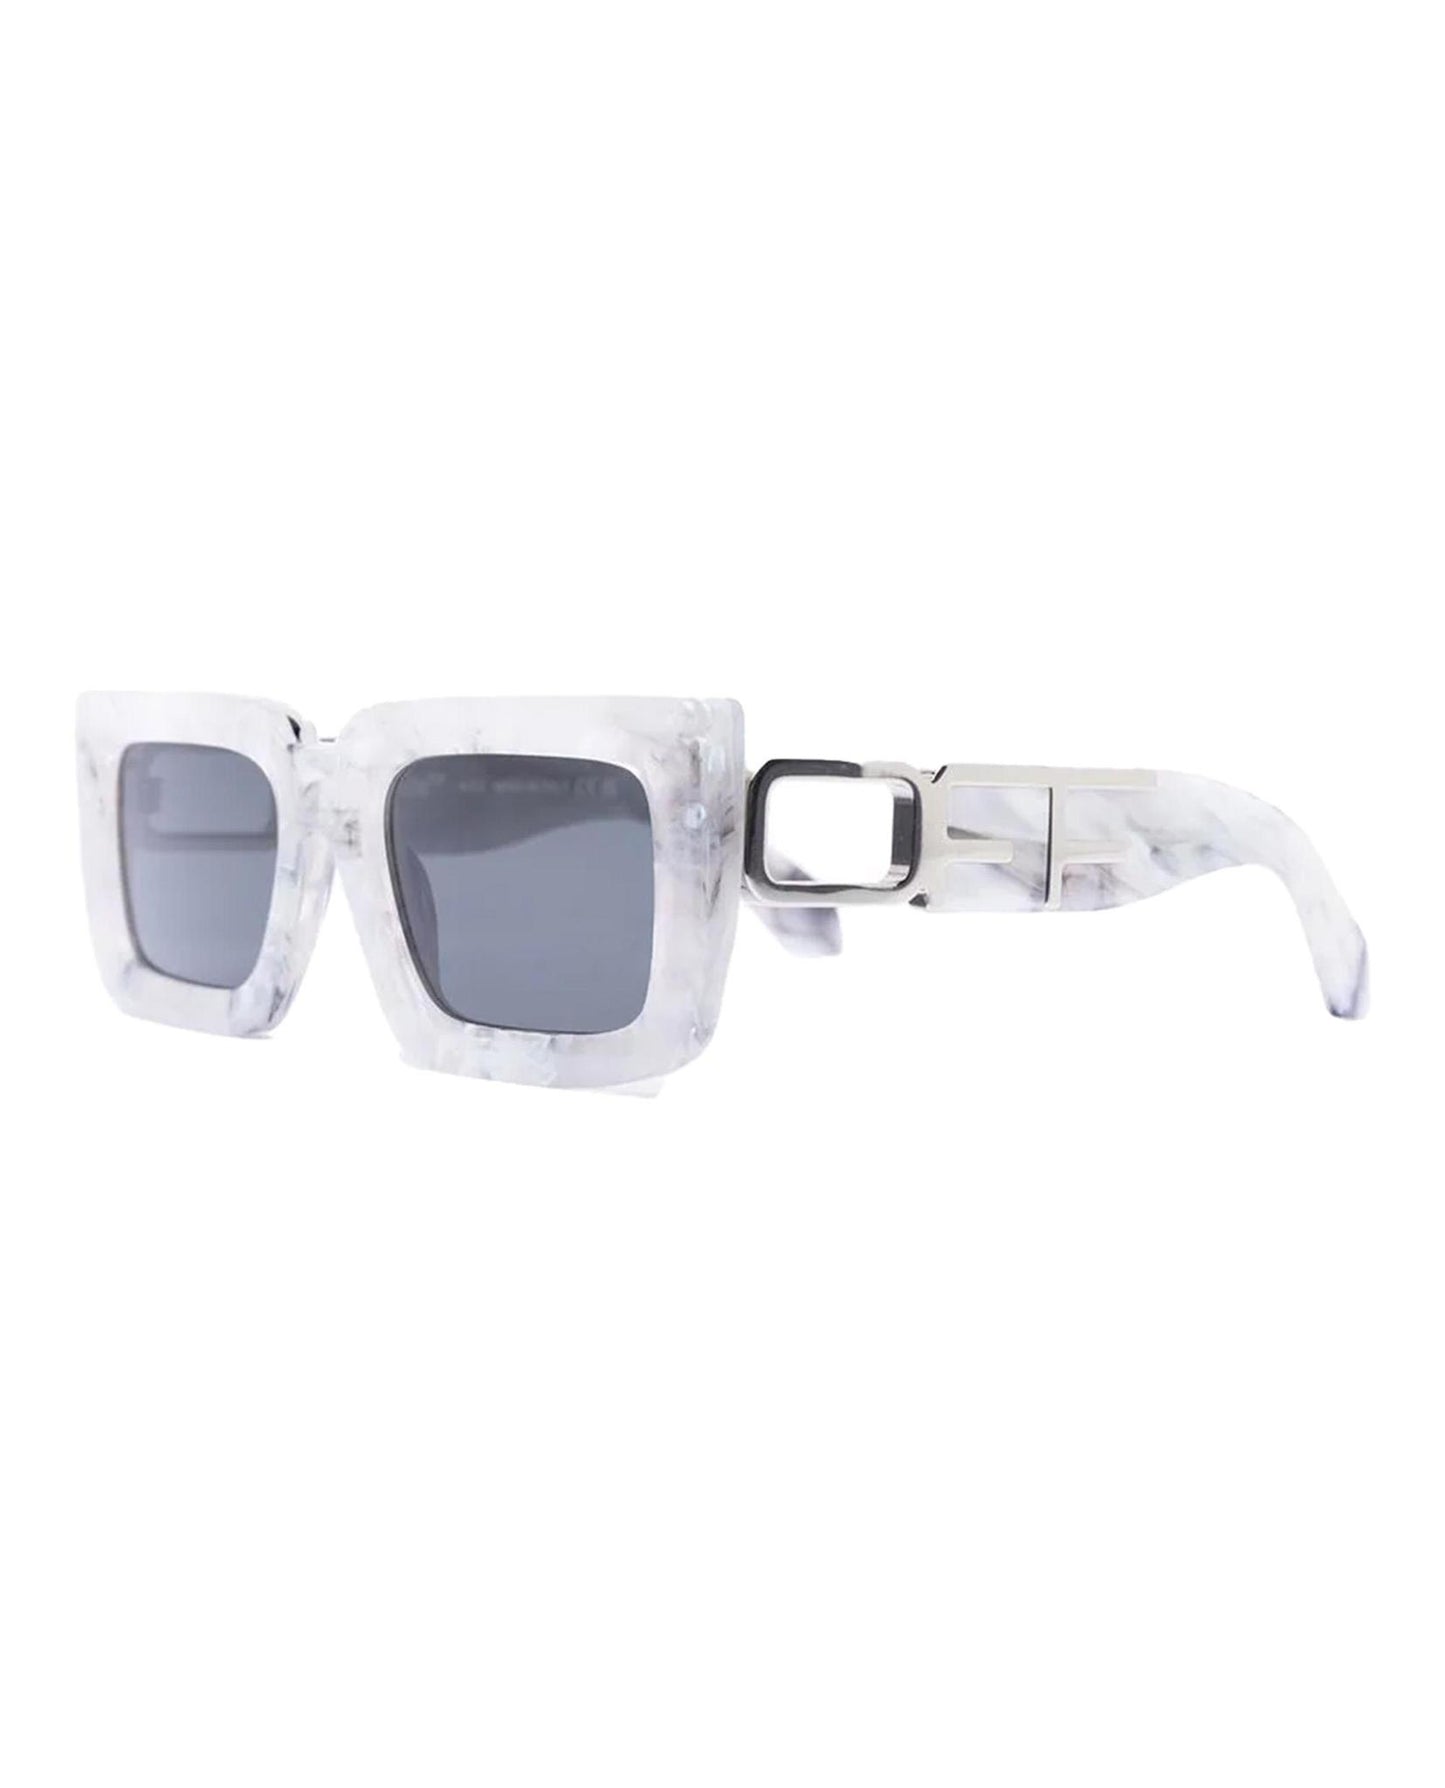 Off-White Men's Sunglasses